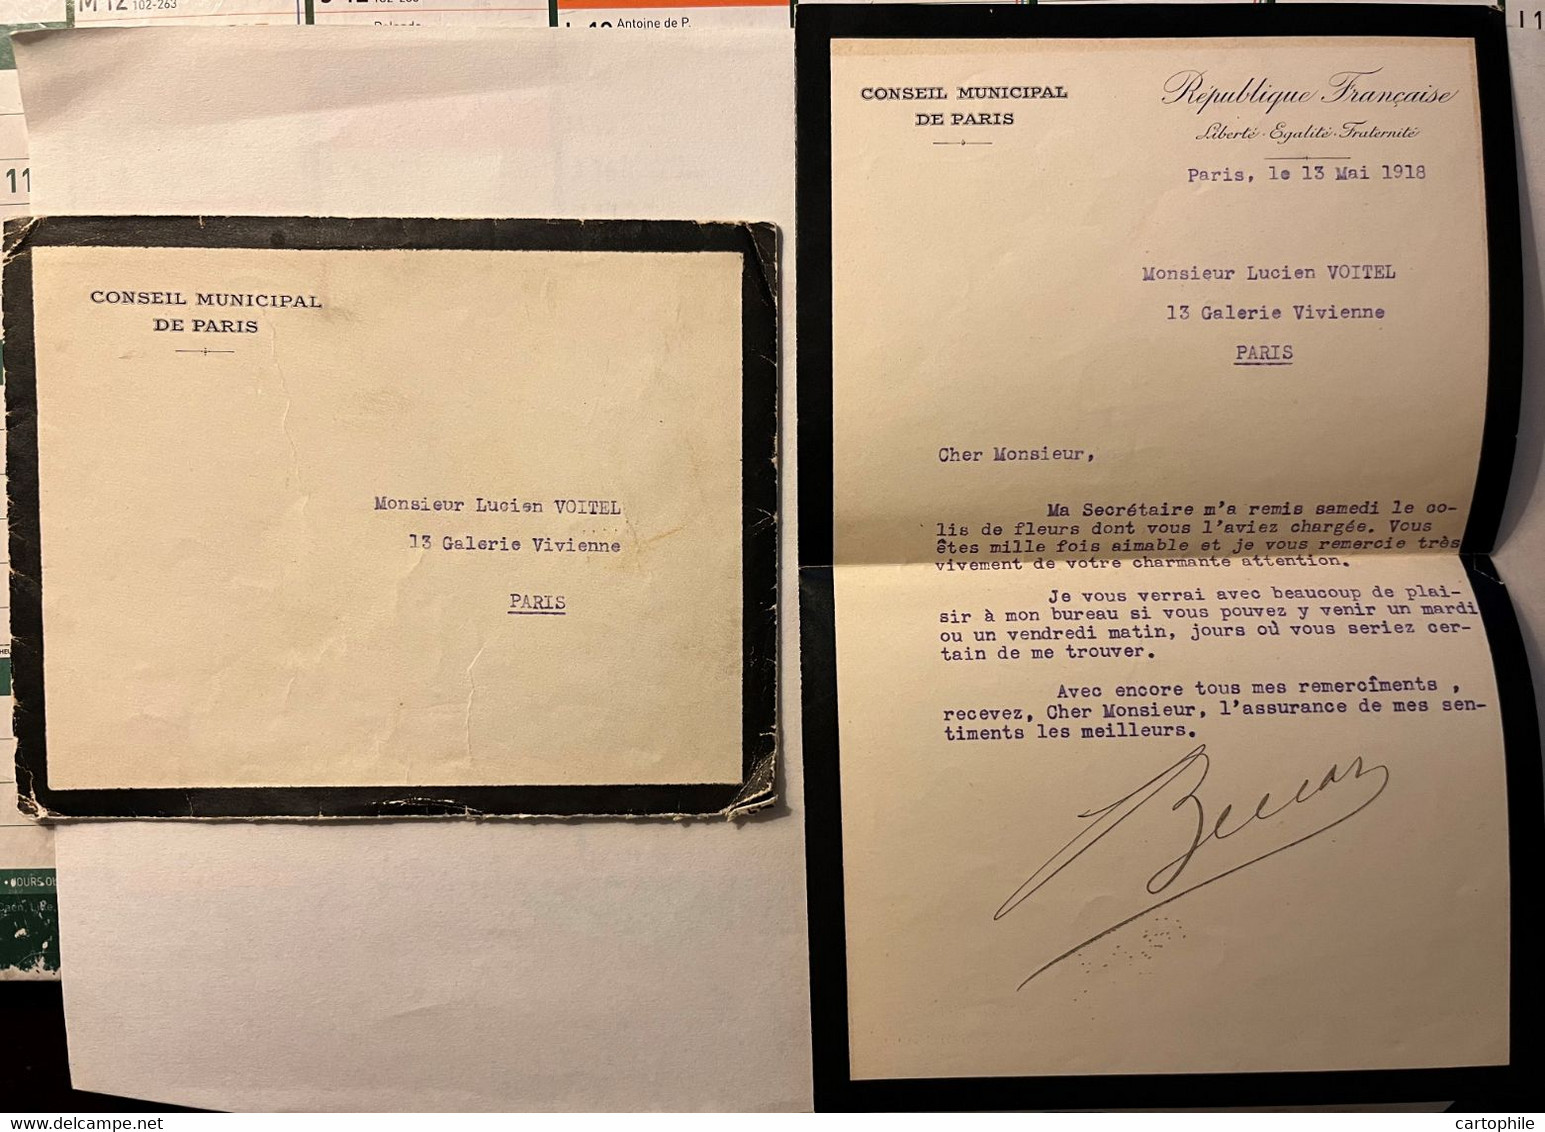 LAC Autographe De Leopold Bellan - Conseil Municipal De Paris En Mai 1918 - Homme Politique - Manuscrits